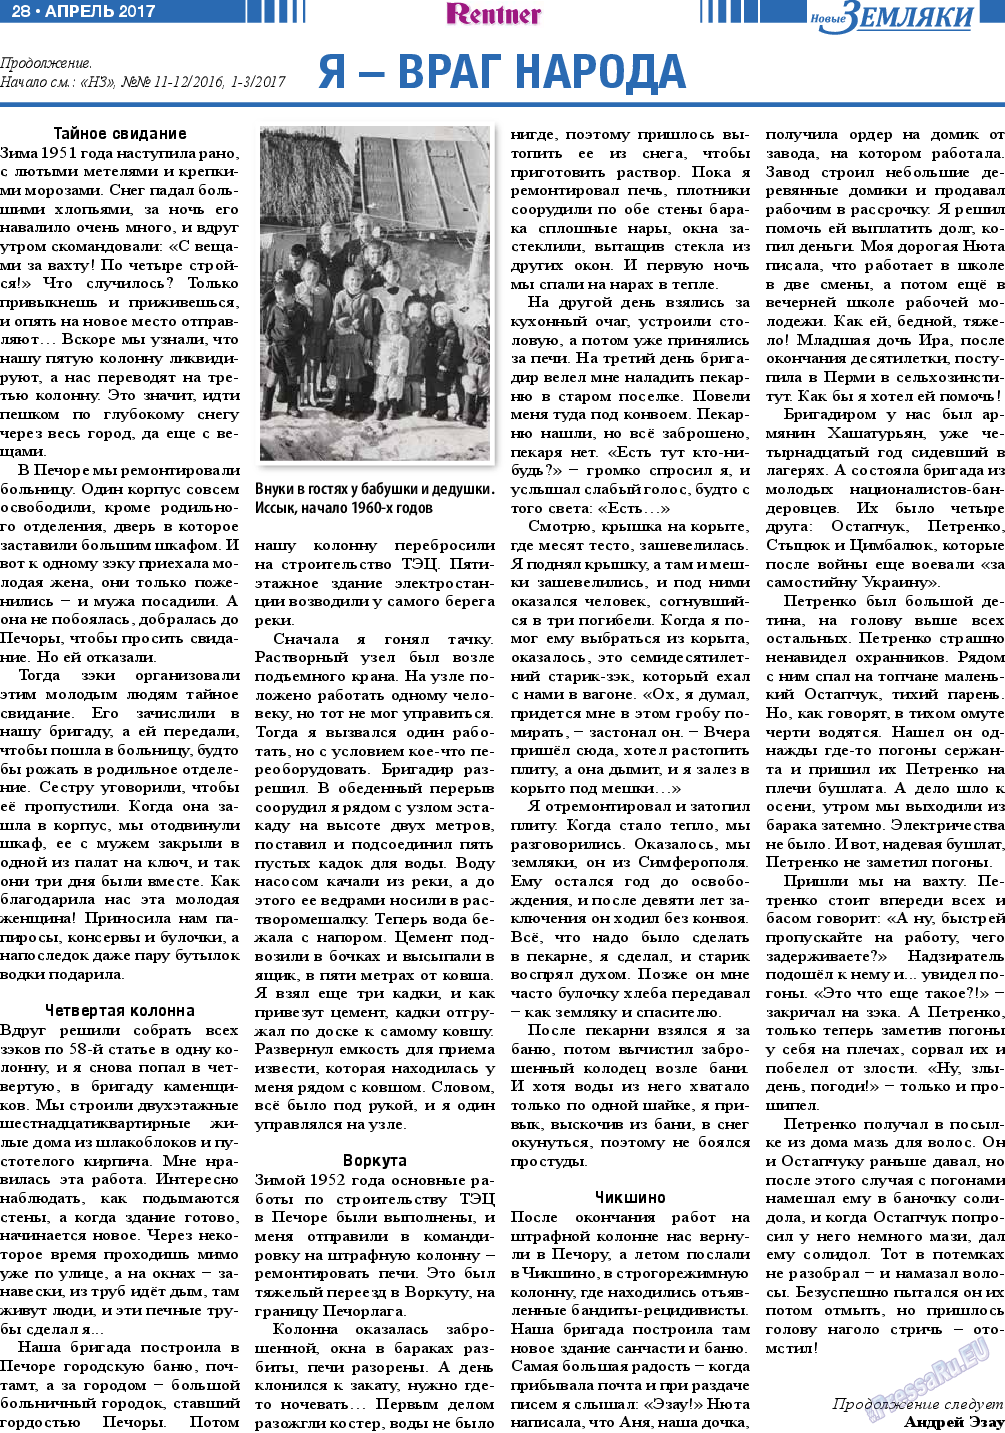 Новые Земляки, газета. 2017 №4 стр.28